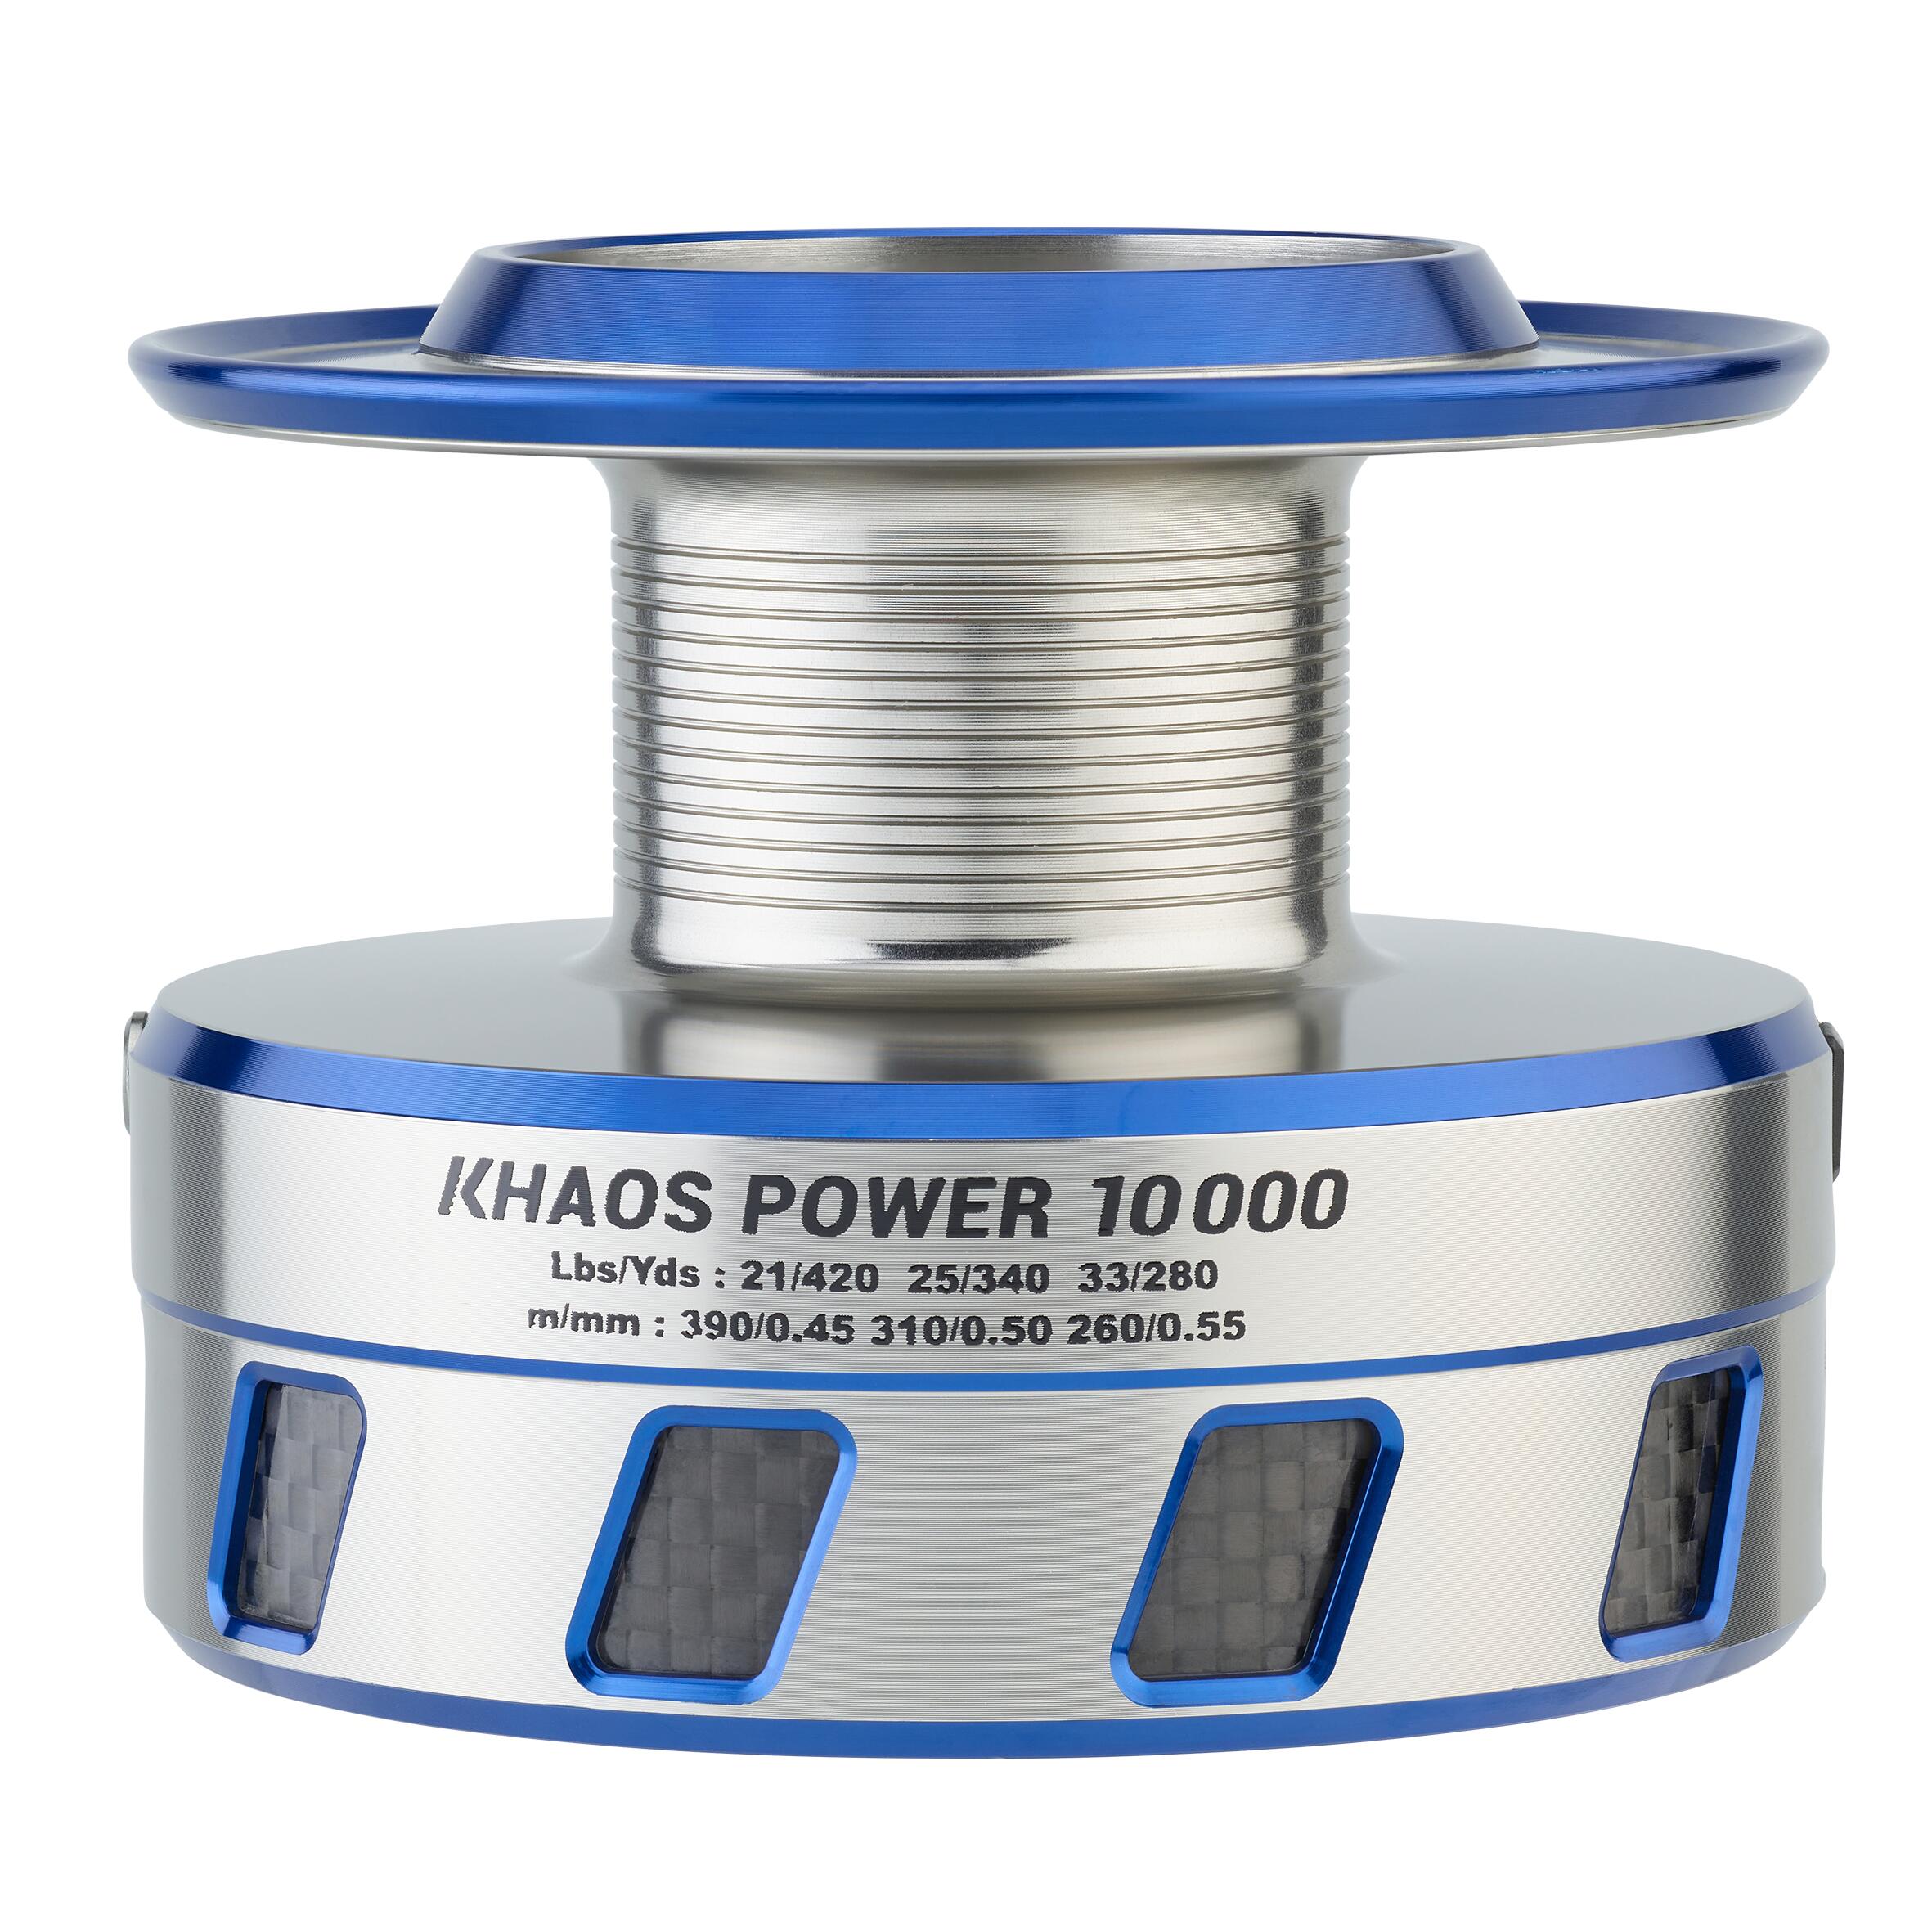 Tambur Khaos power 10000 Pescuit marin